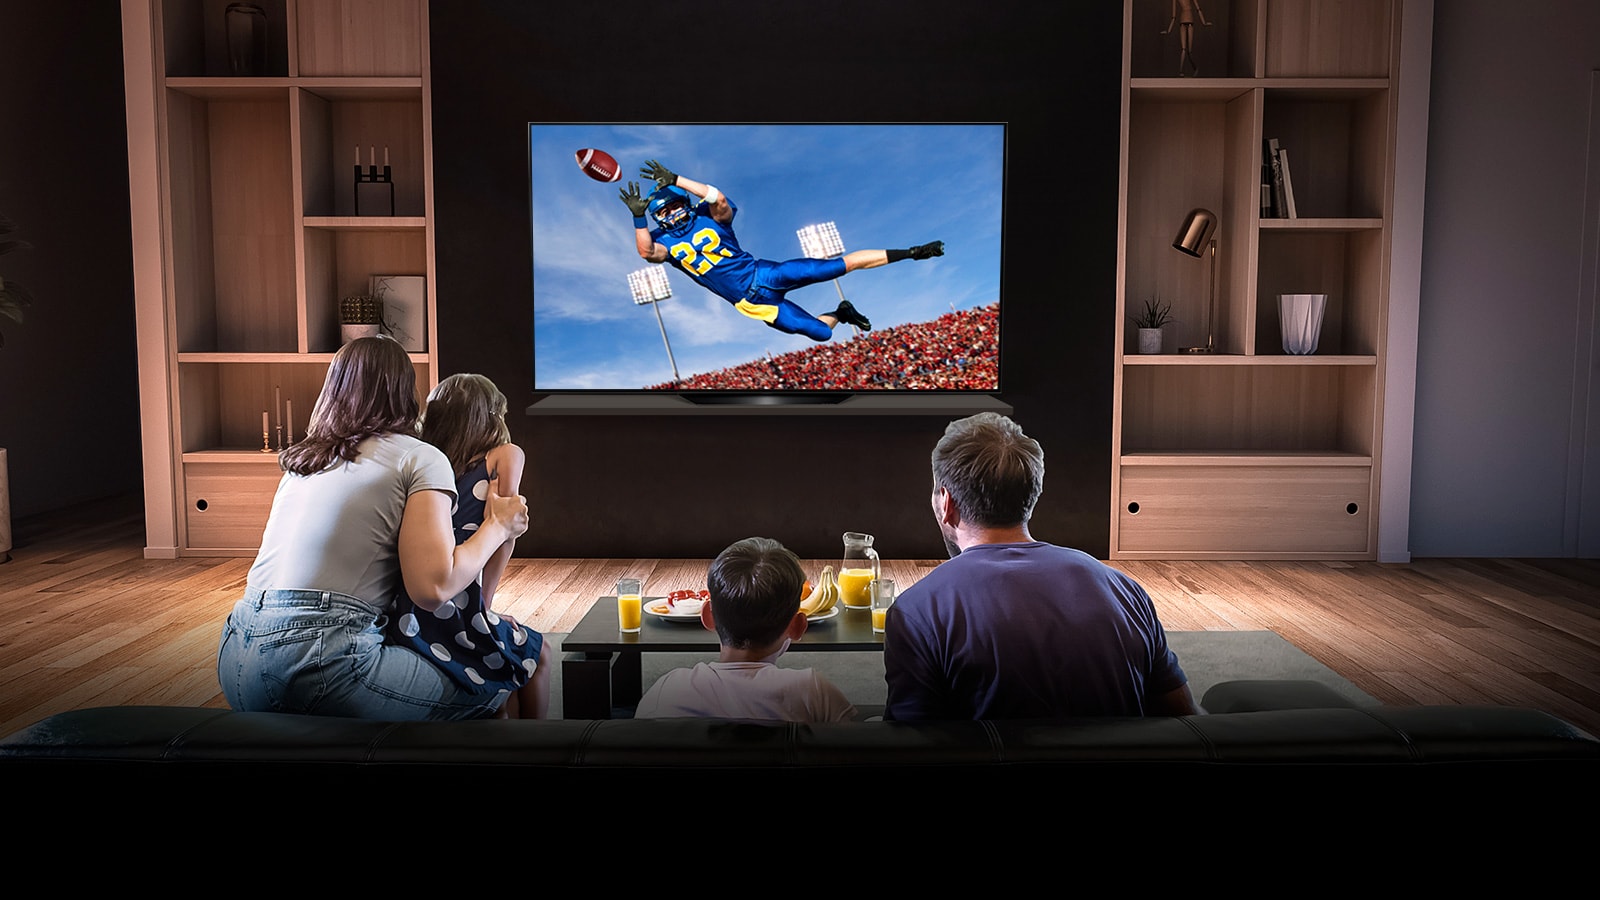 Az emberek egy amerikai futball játékot néznek a tévében a nappaliban